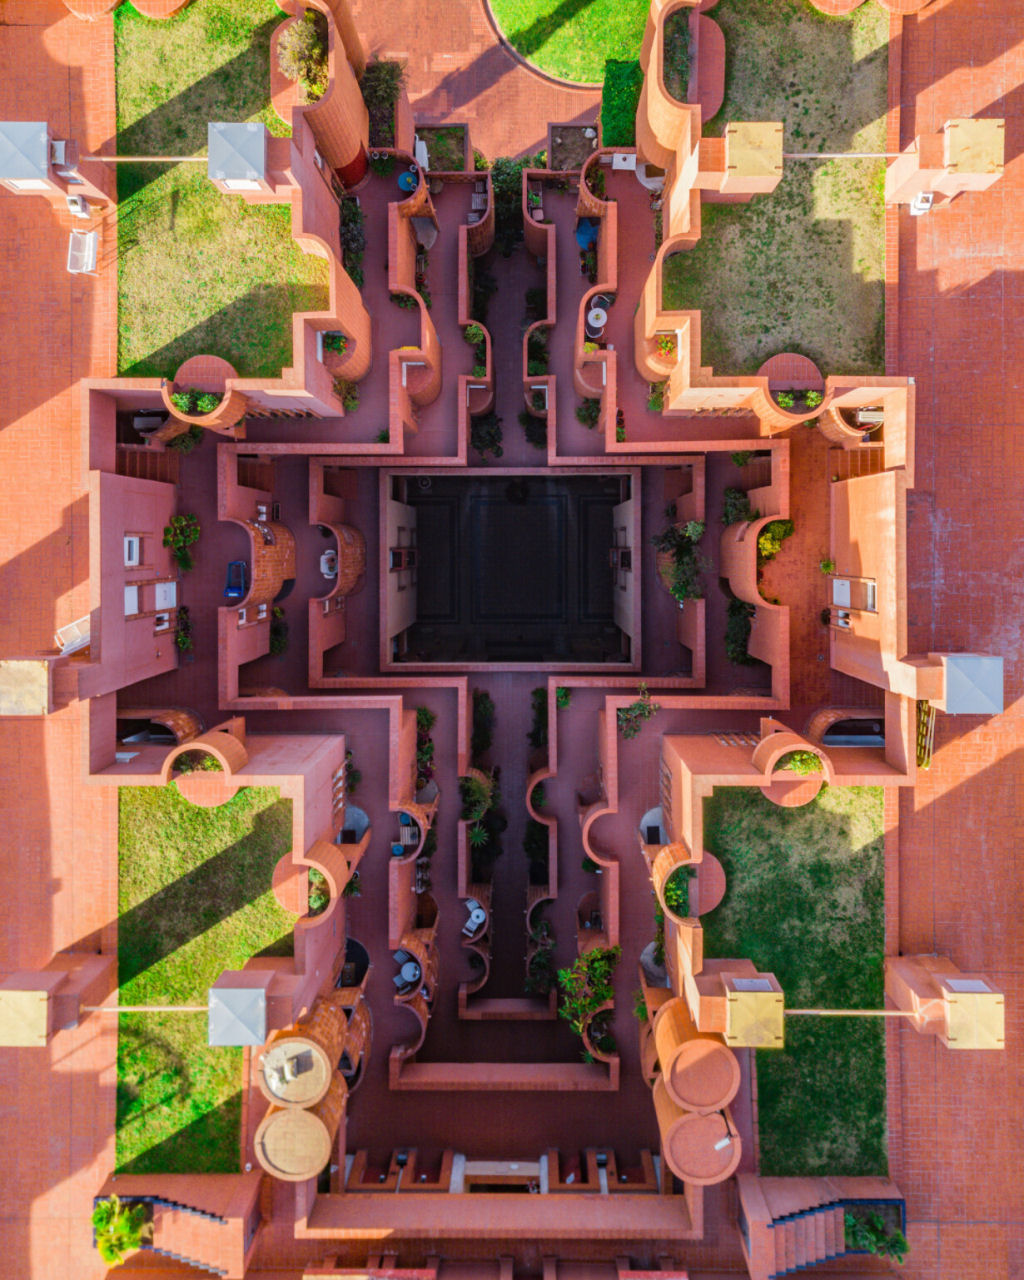 Barcelona geométrica: as fotografias a vista de drone que recolhem a beleza da cidade 03